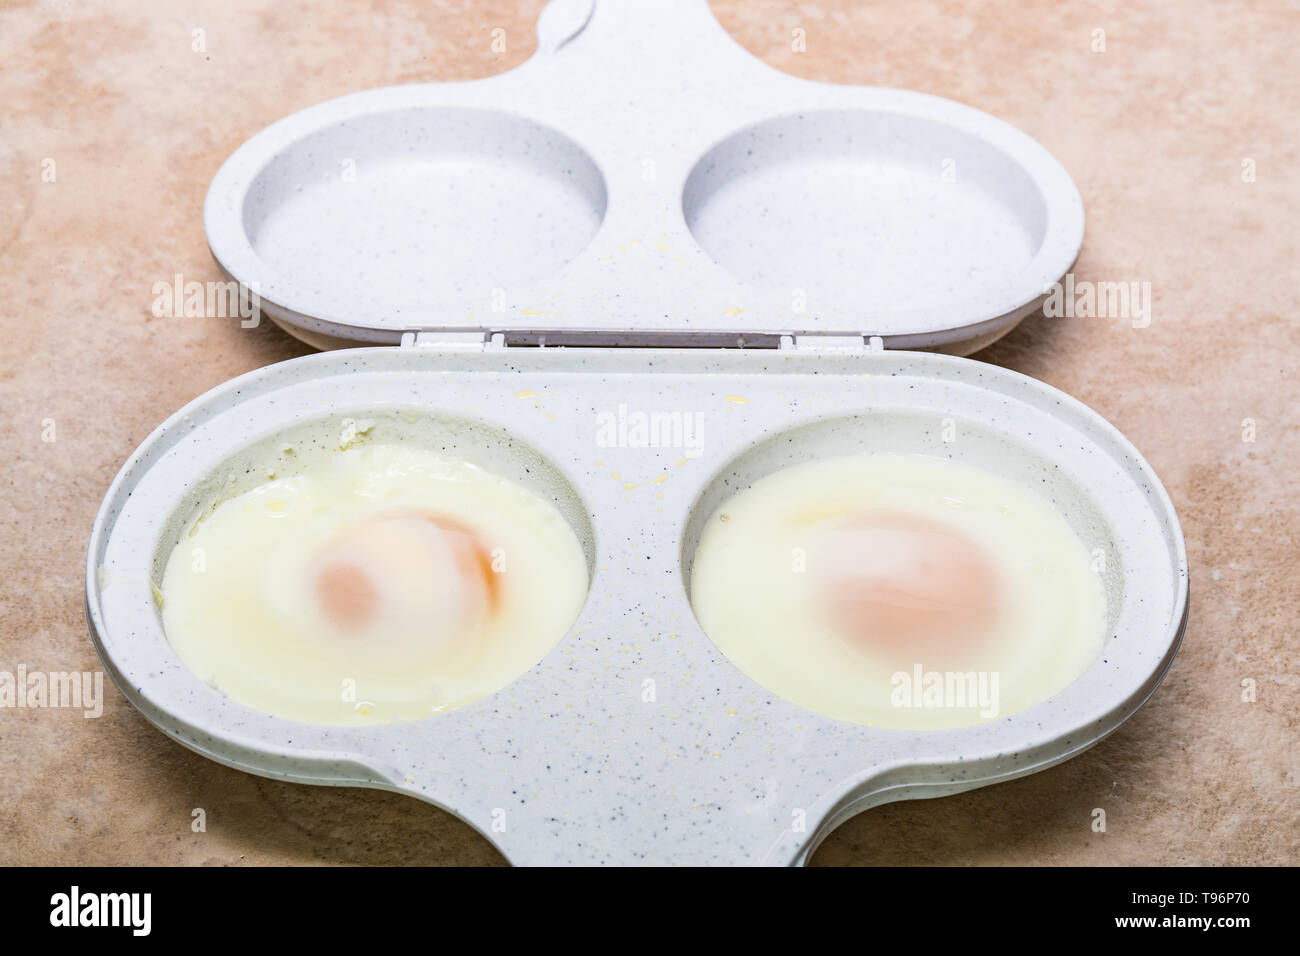 Dos microondas huevo cocina con dos huevos cocidos Fotografía de stock -  Alamy